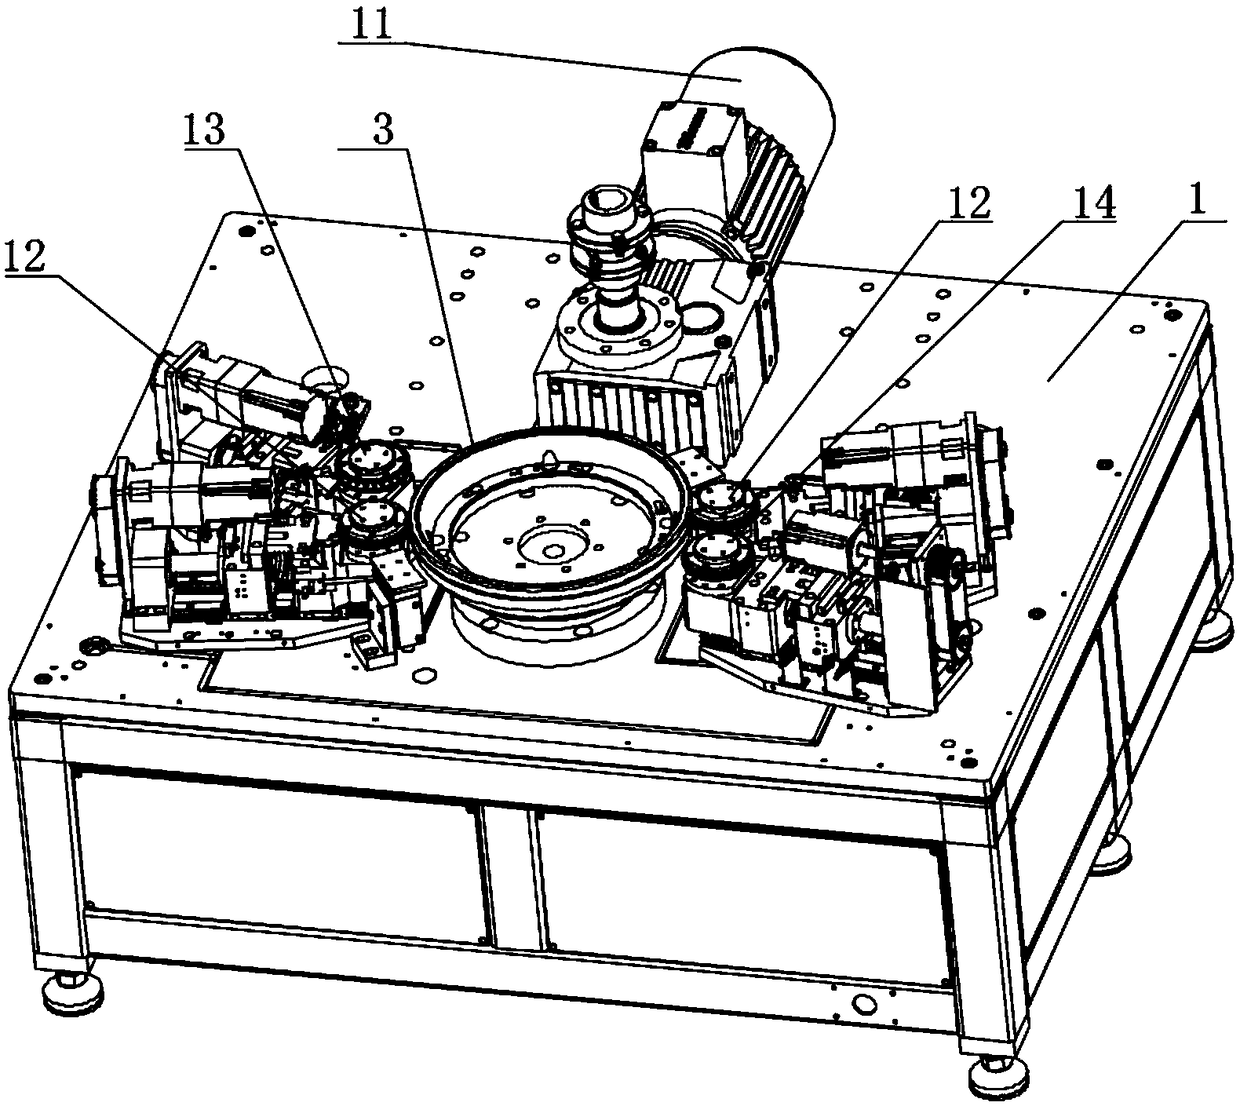 Rotary riveting equipment for inner drum of washing machine